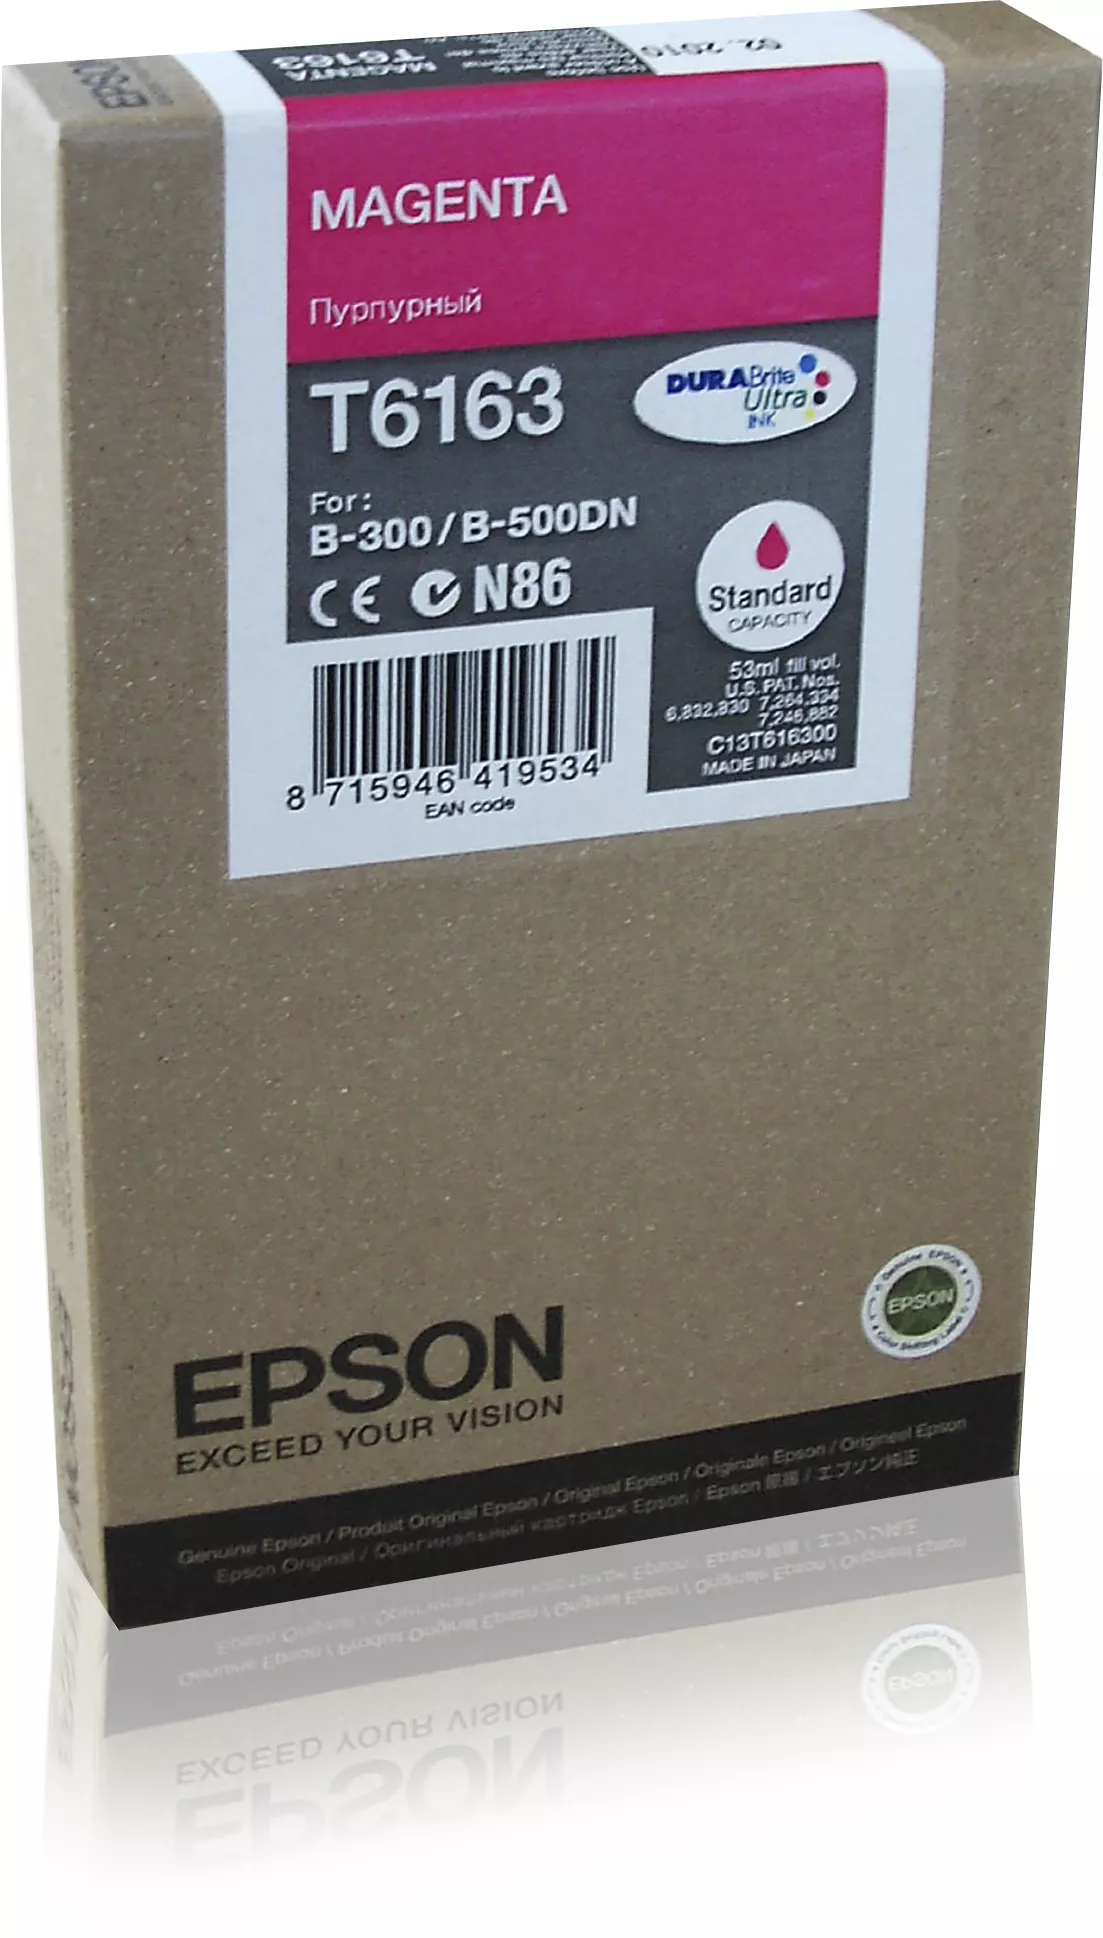 Achat Cartouches d'encre EPSON T6163 cartouche de encre magenta capacité standard